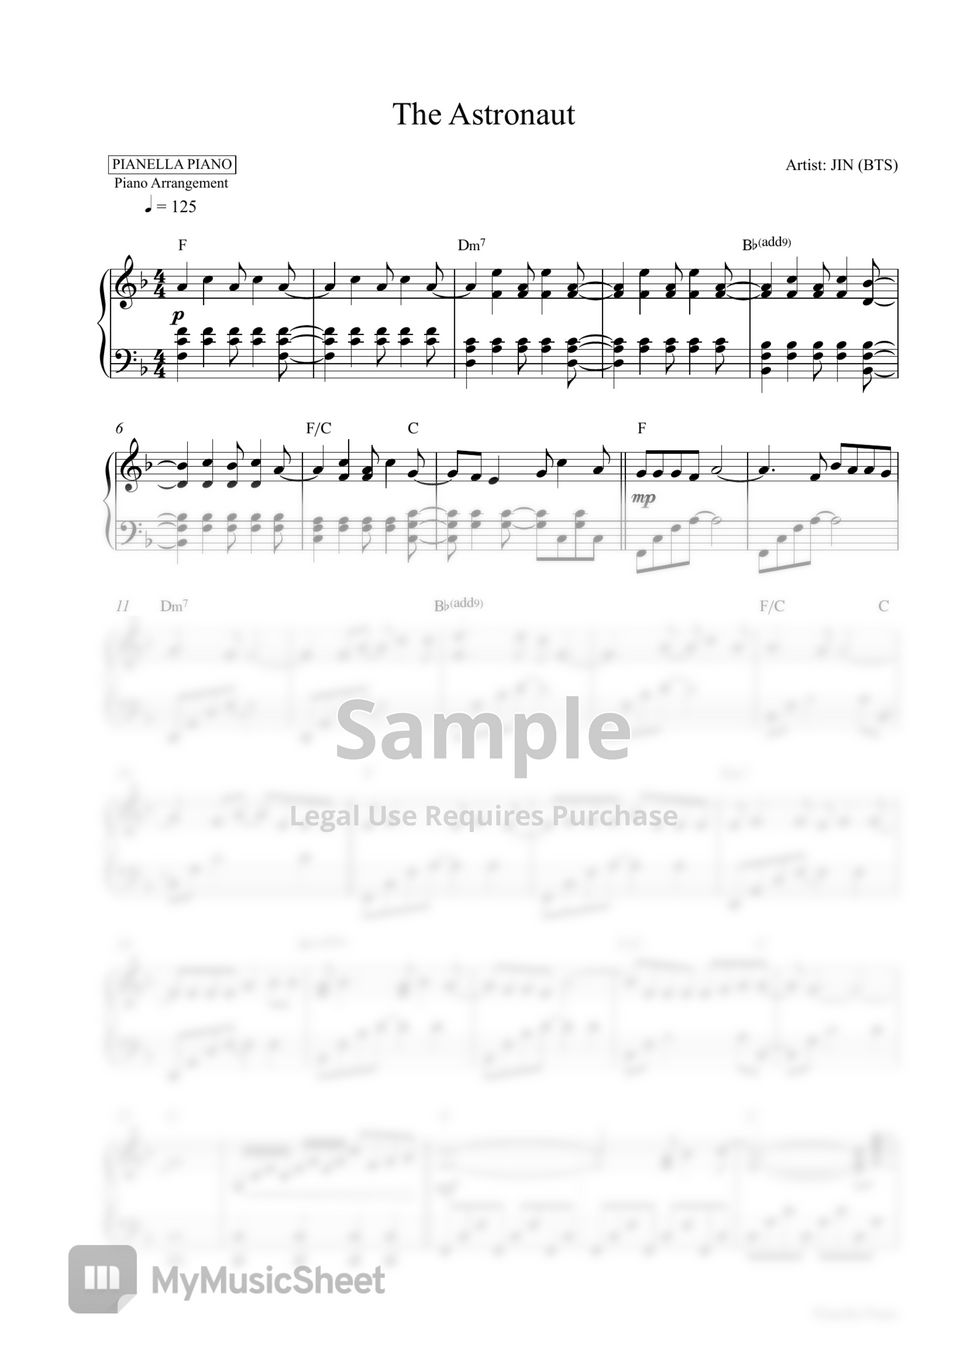 JIN (BTS) - The Astronaut (Piano Sheet) by Pianella Piano